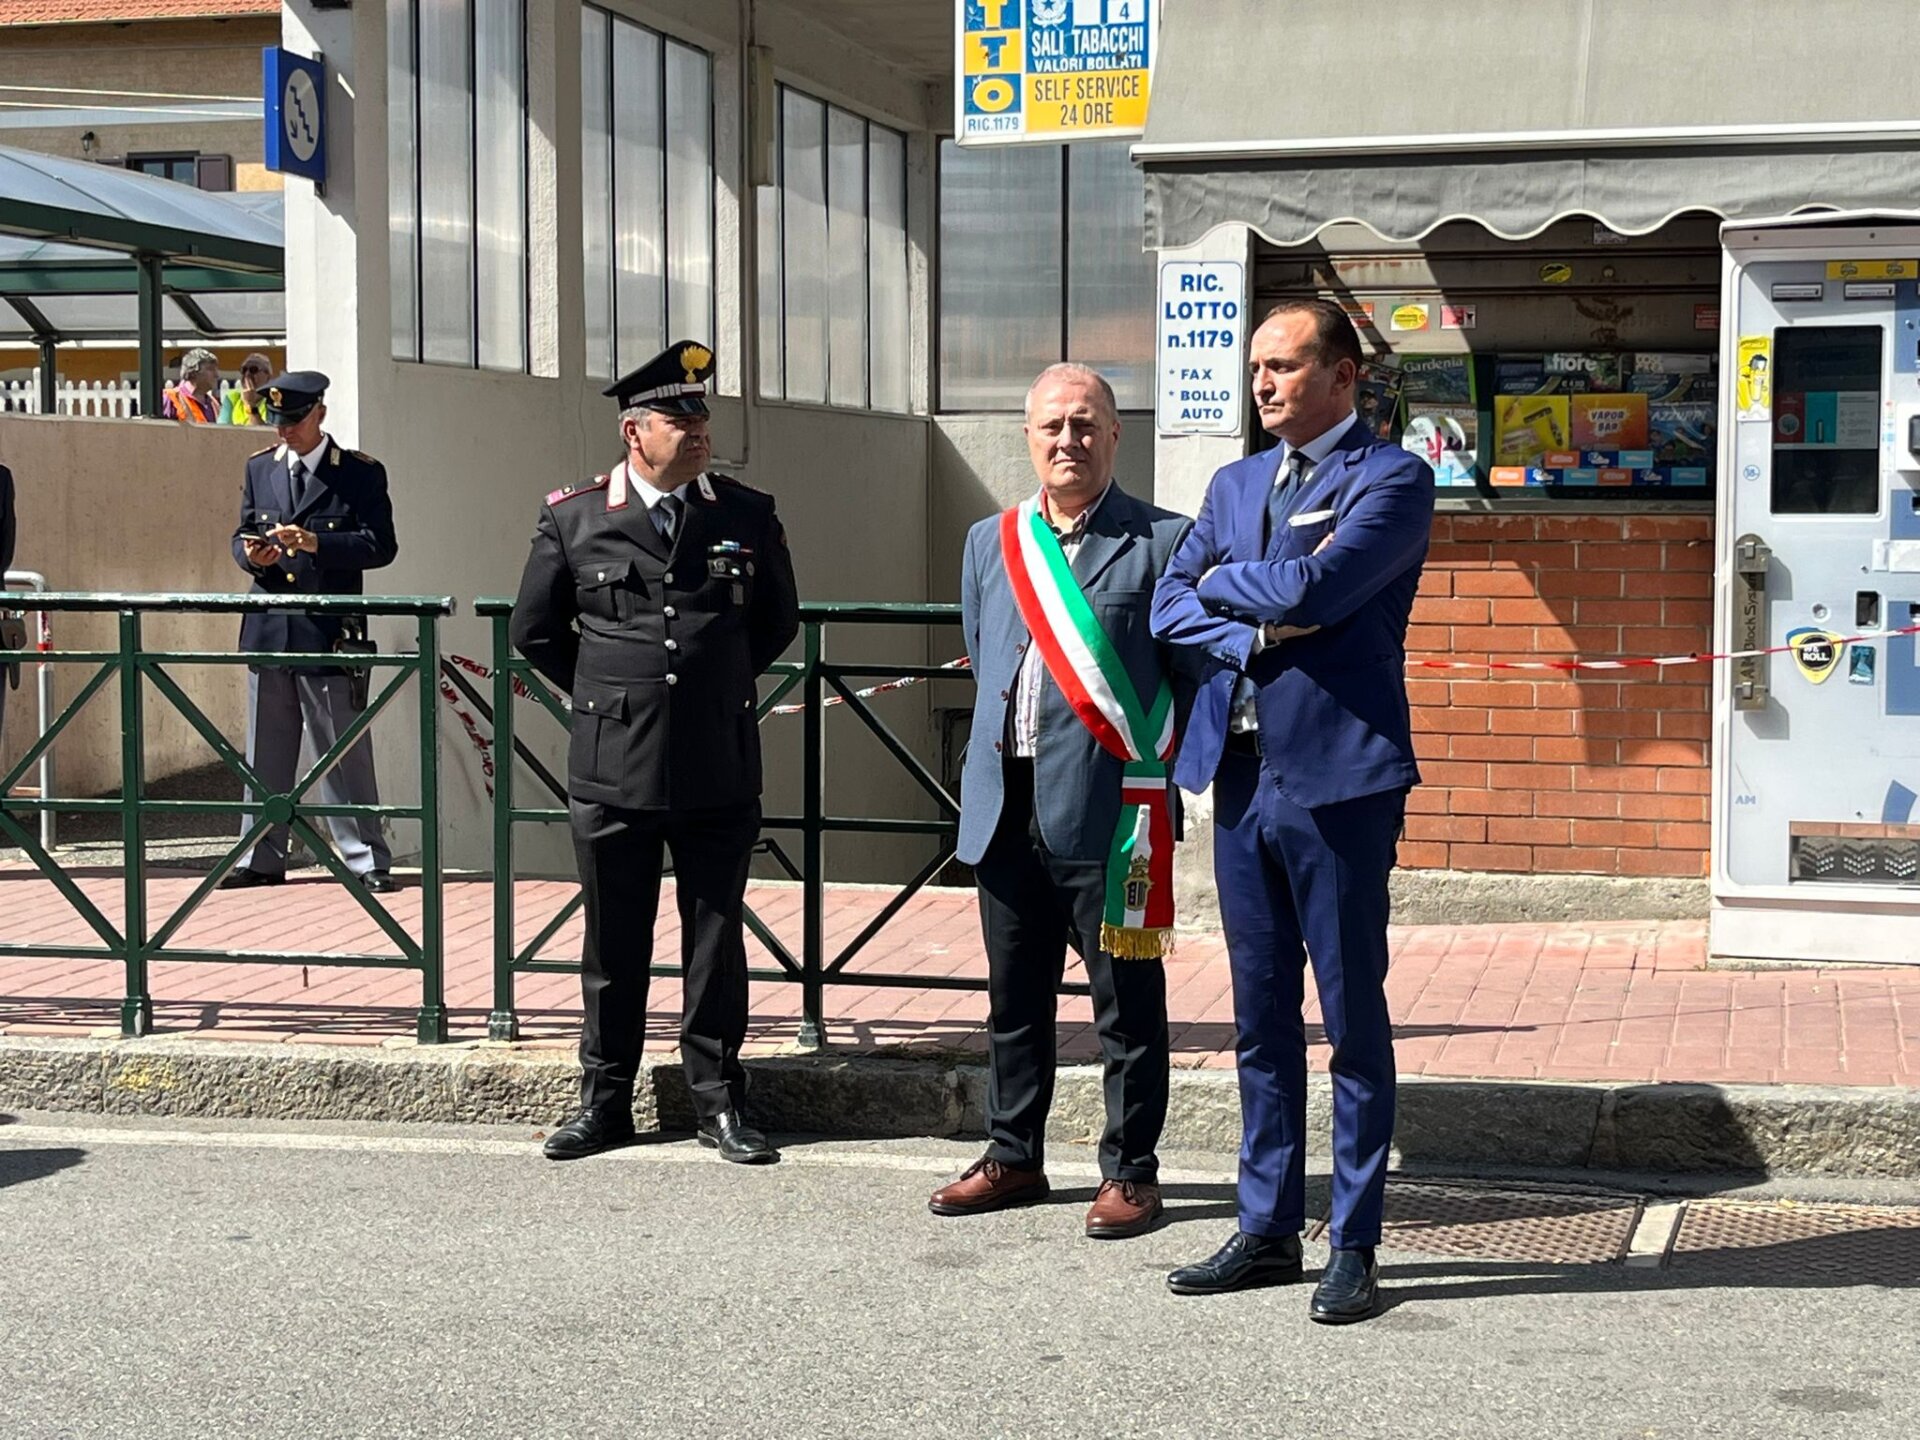 La Regione Piemonte proclama una giornata di lutto regionale dopo il grave incidente ferroviario della notte scorsa a Brandizzo, nel quale hanno perso la vita cinque operai mentre erano al lavoro.